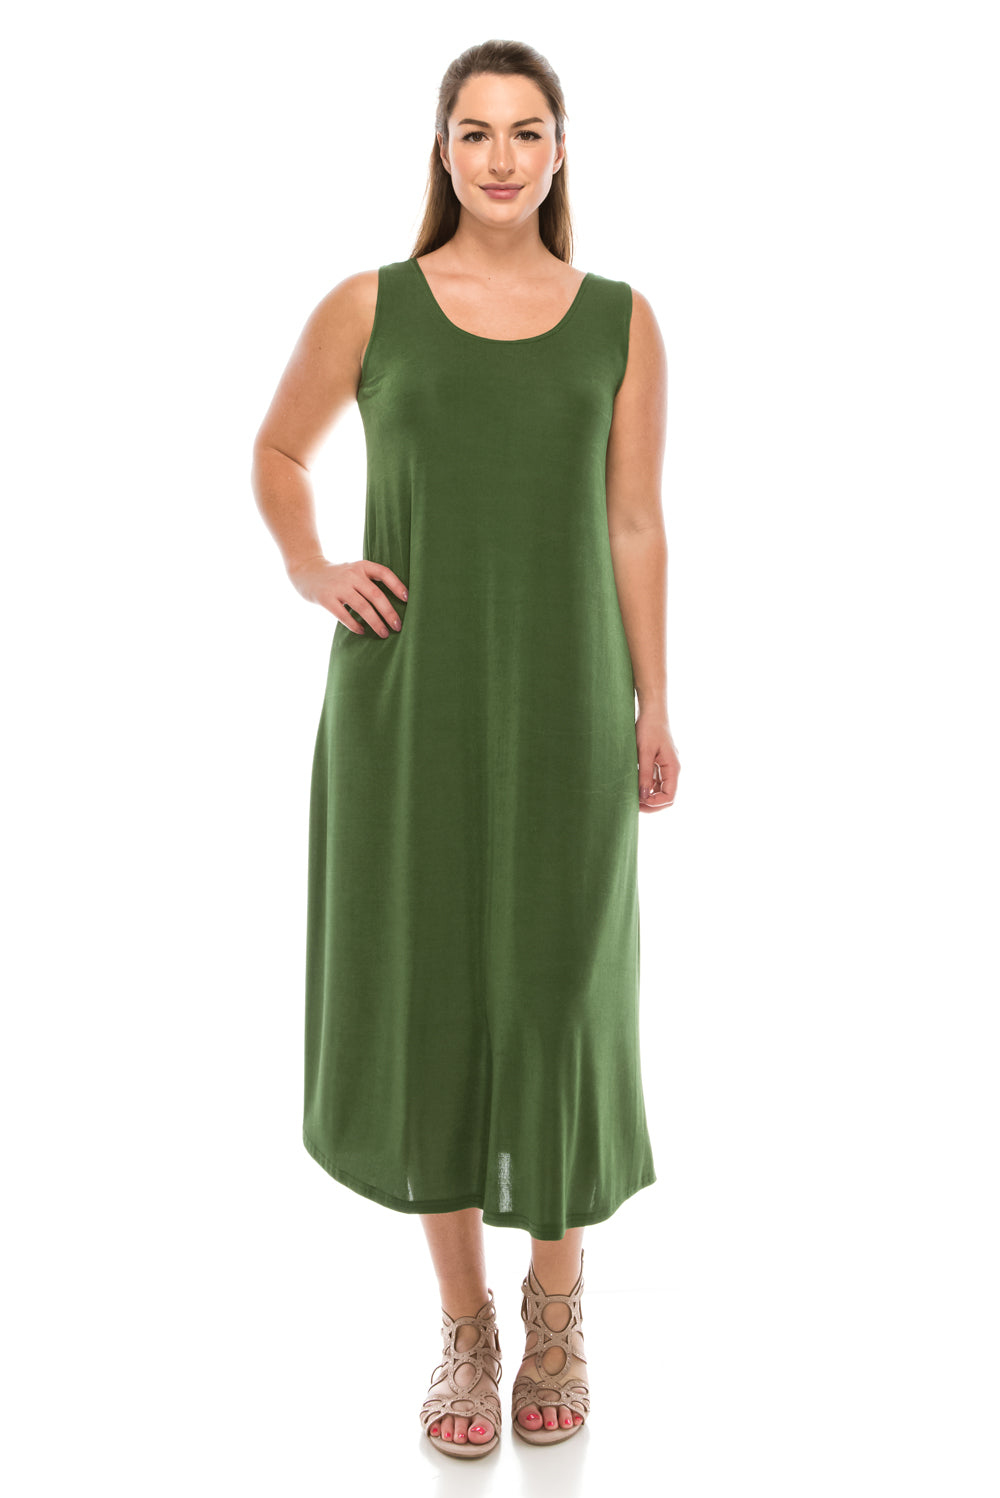 Jostar Women's Stretch Tank Maxi Dress, 700BN-T - Jostar Online